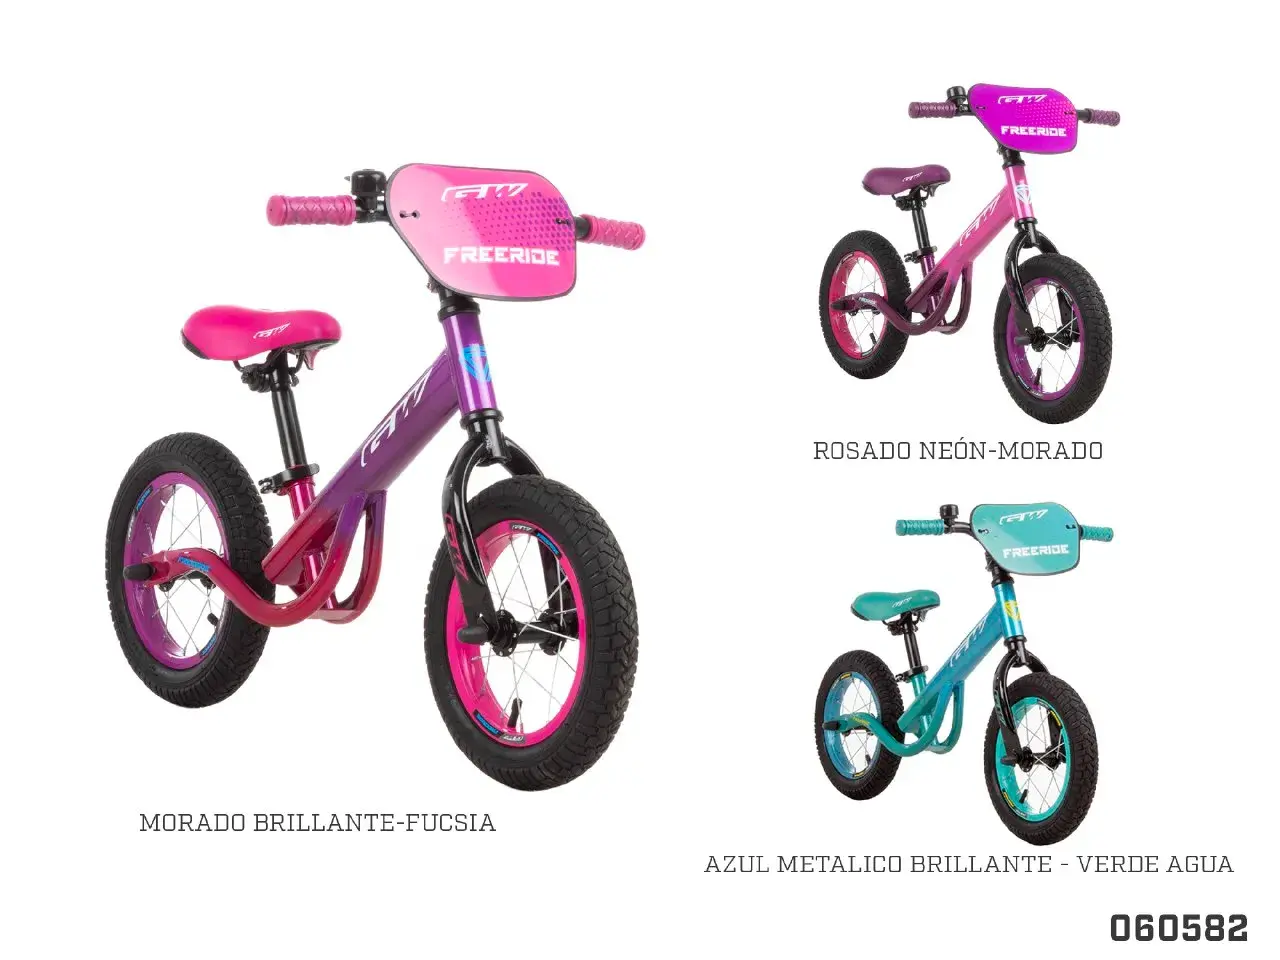 Bicicleta De Equilibrio Sin Pedales para Niños - ELE-GATE